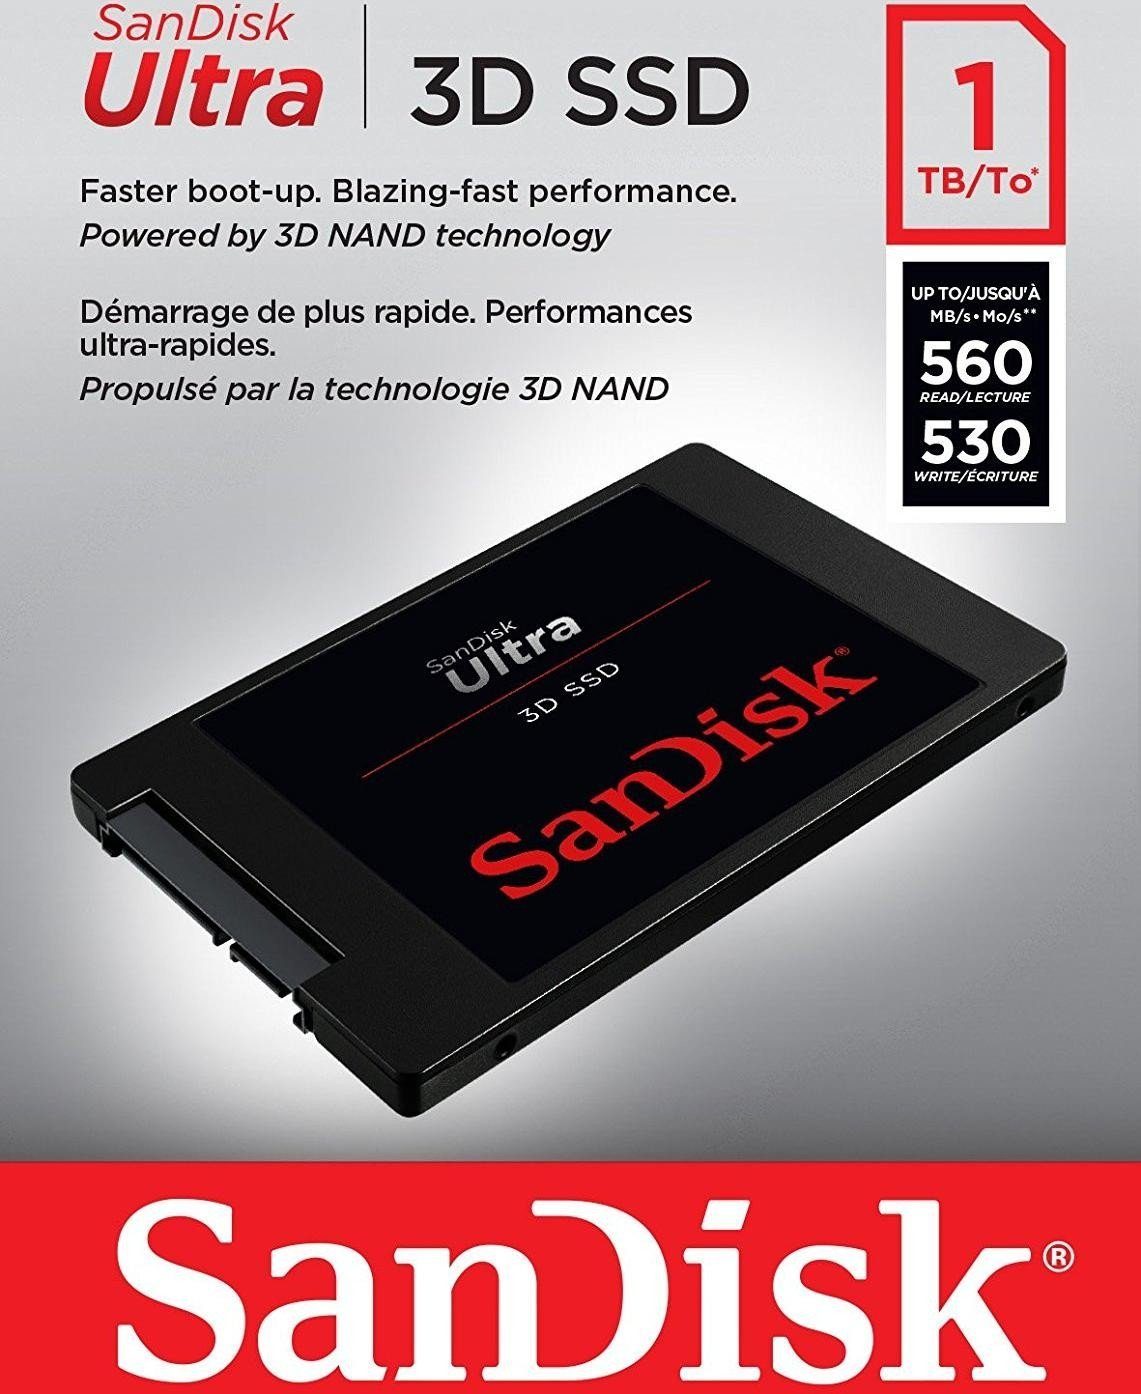 Lesegeschwindigkeit, 530 2,5"" 560 SSD (1TB) Sandisk Schreibgeschwindigkeit MB/S interne MB/S SSD Ultra 3D